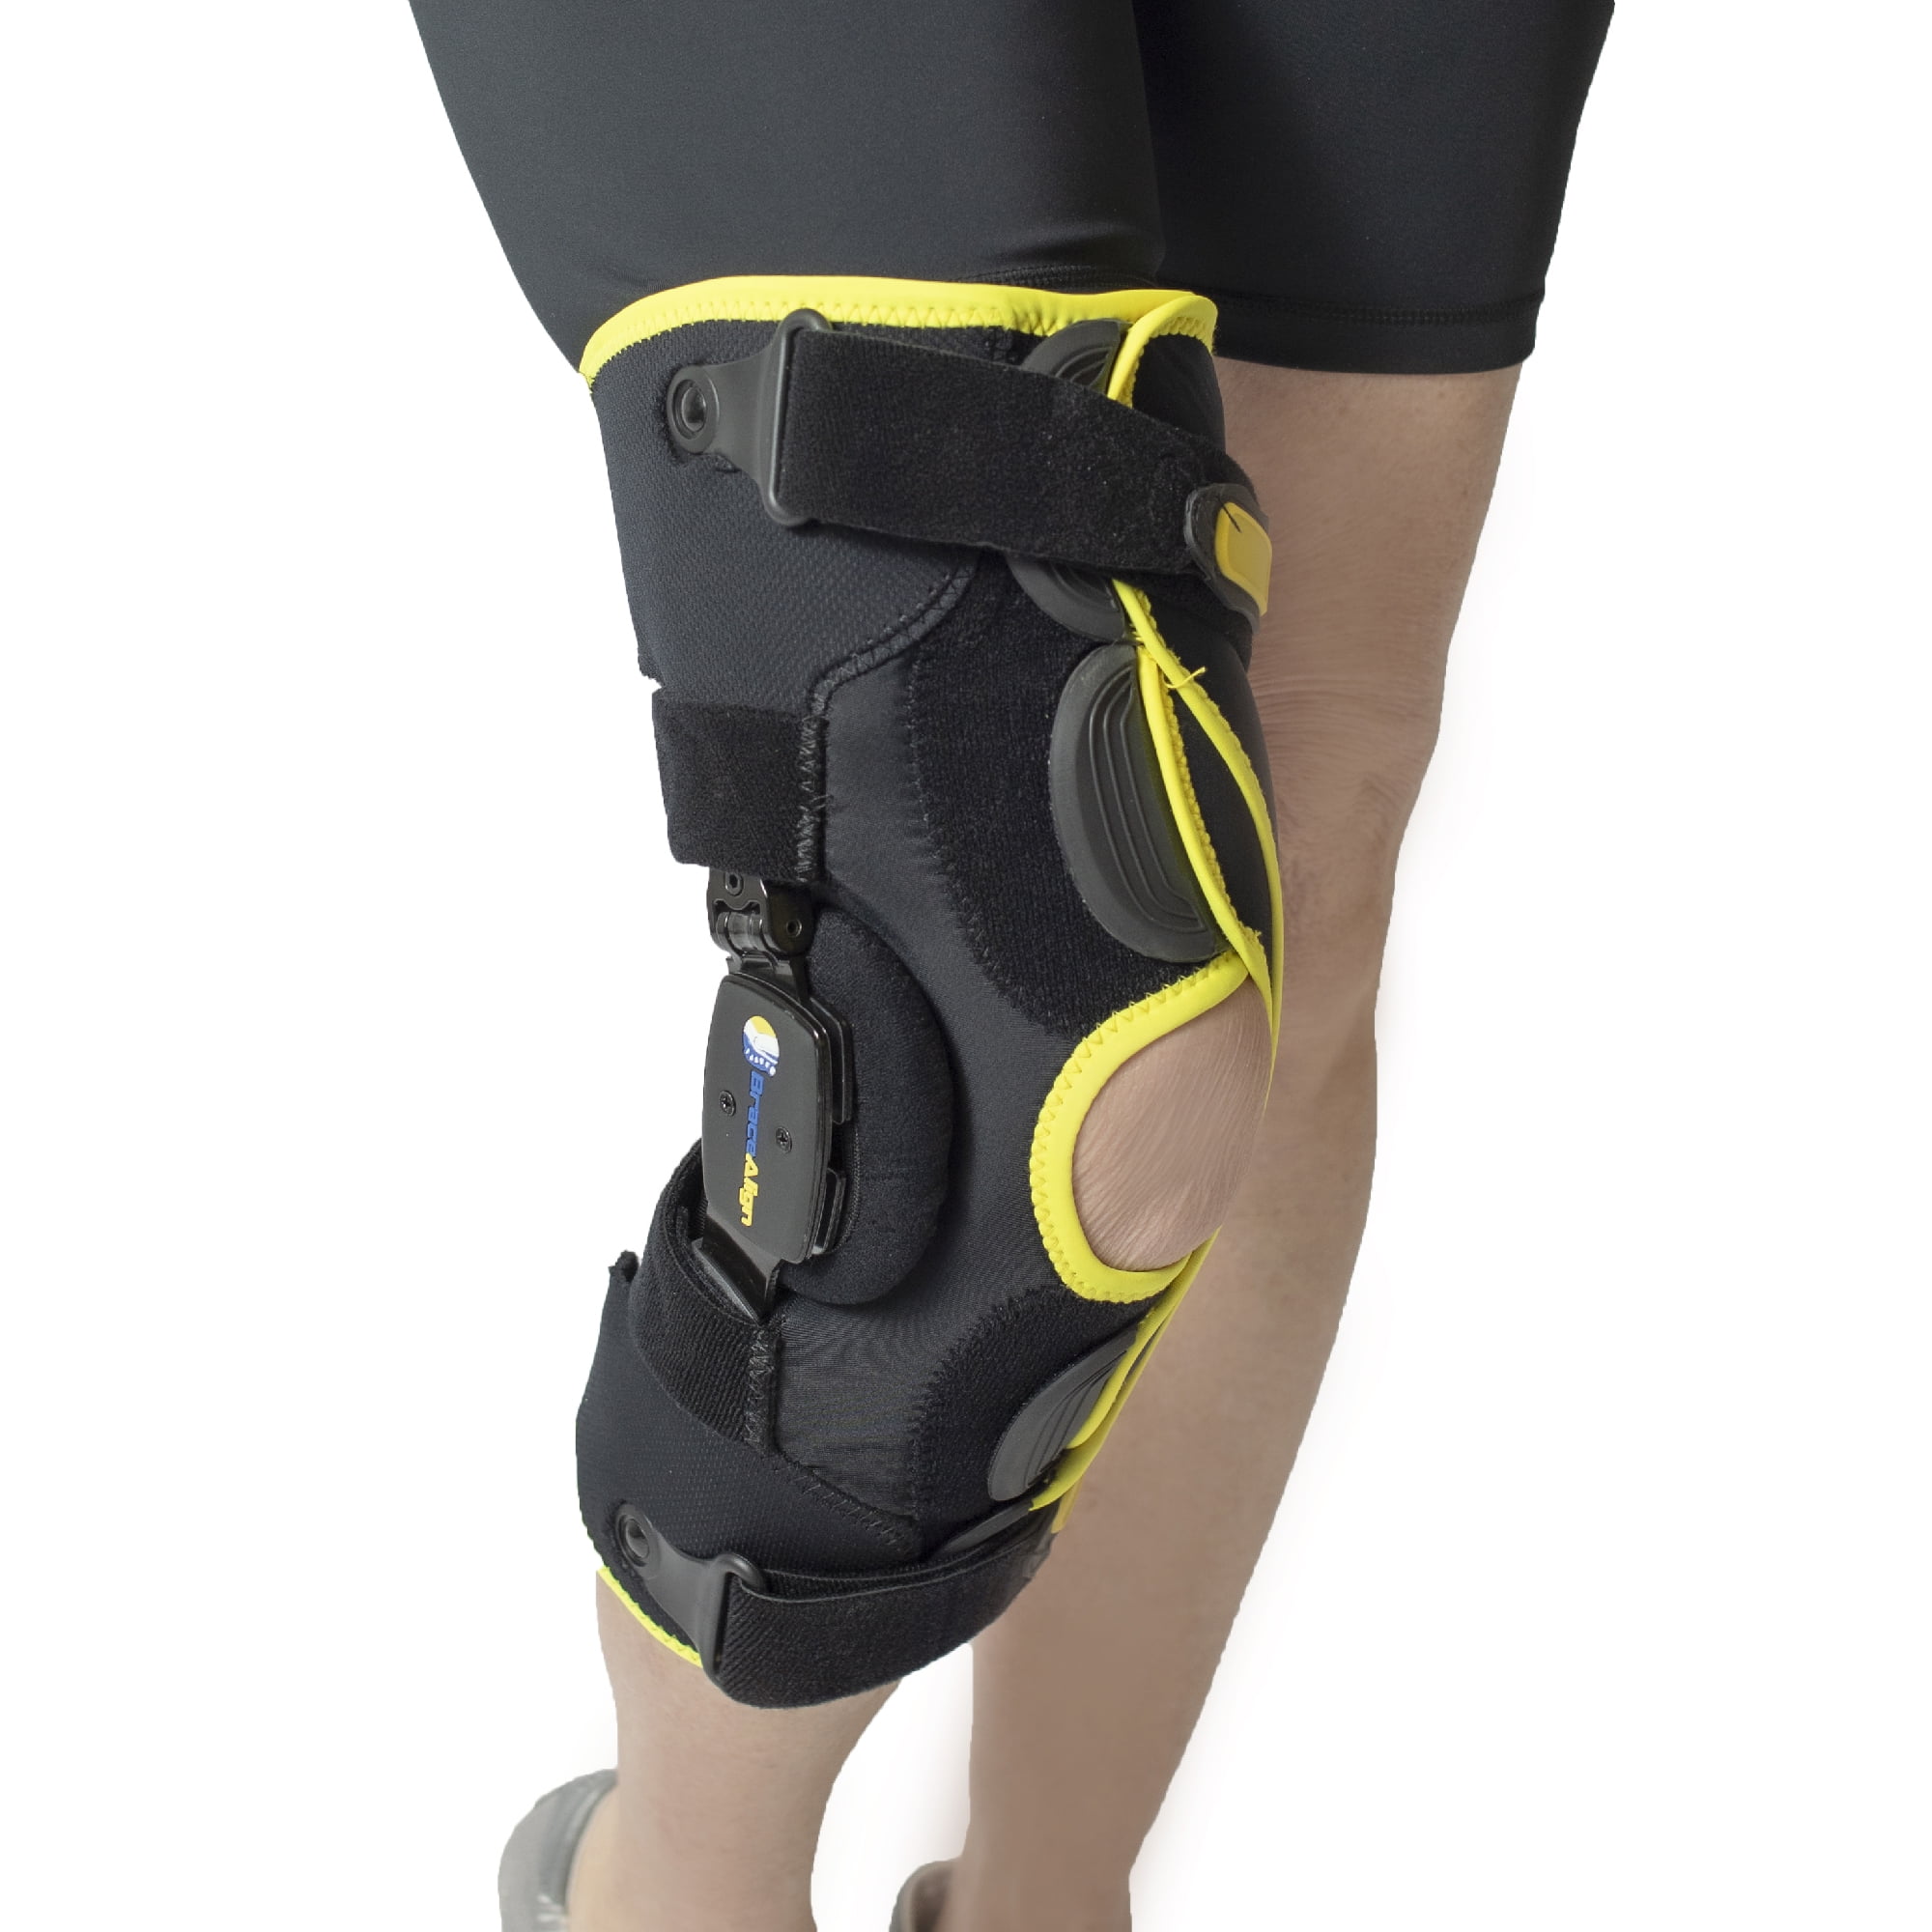 Brace Align KOAlign Plus Size Knee Brace for Osteoarthritis Wrap